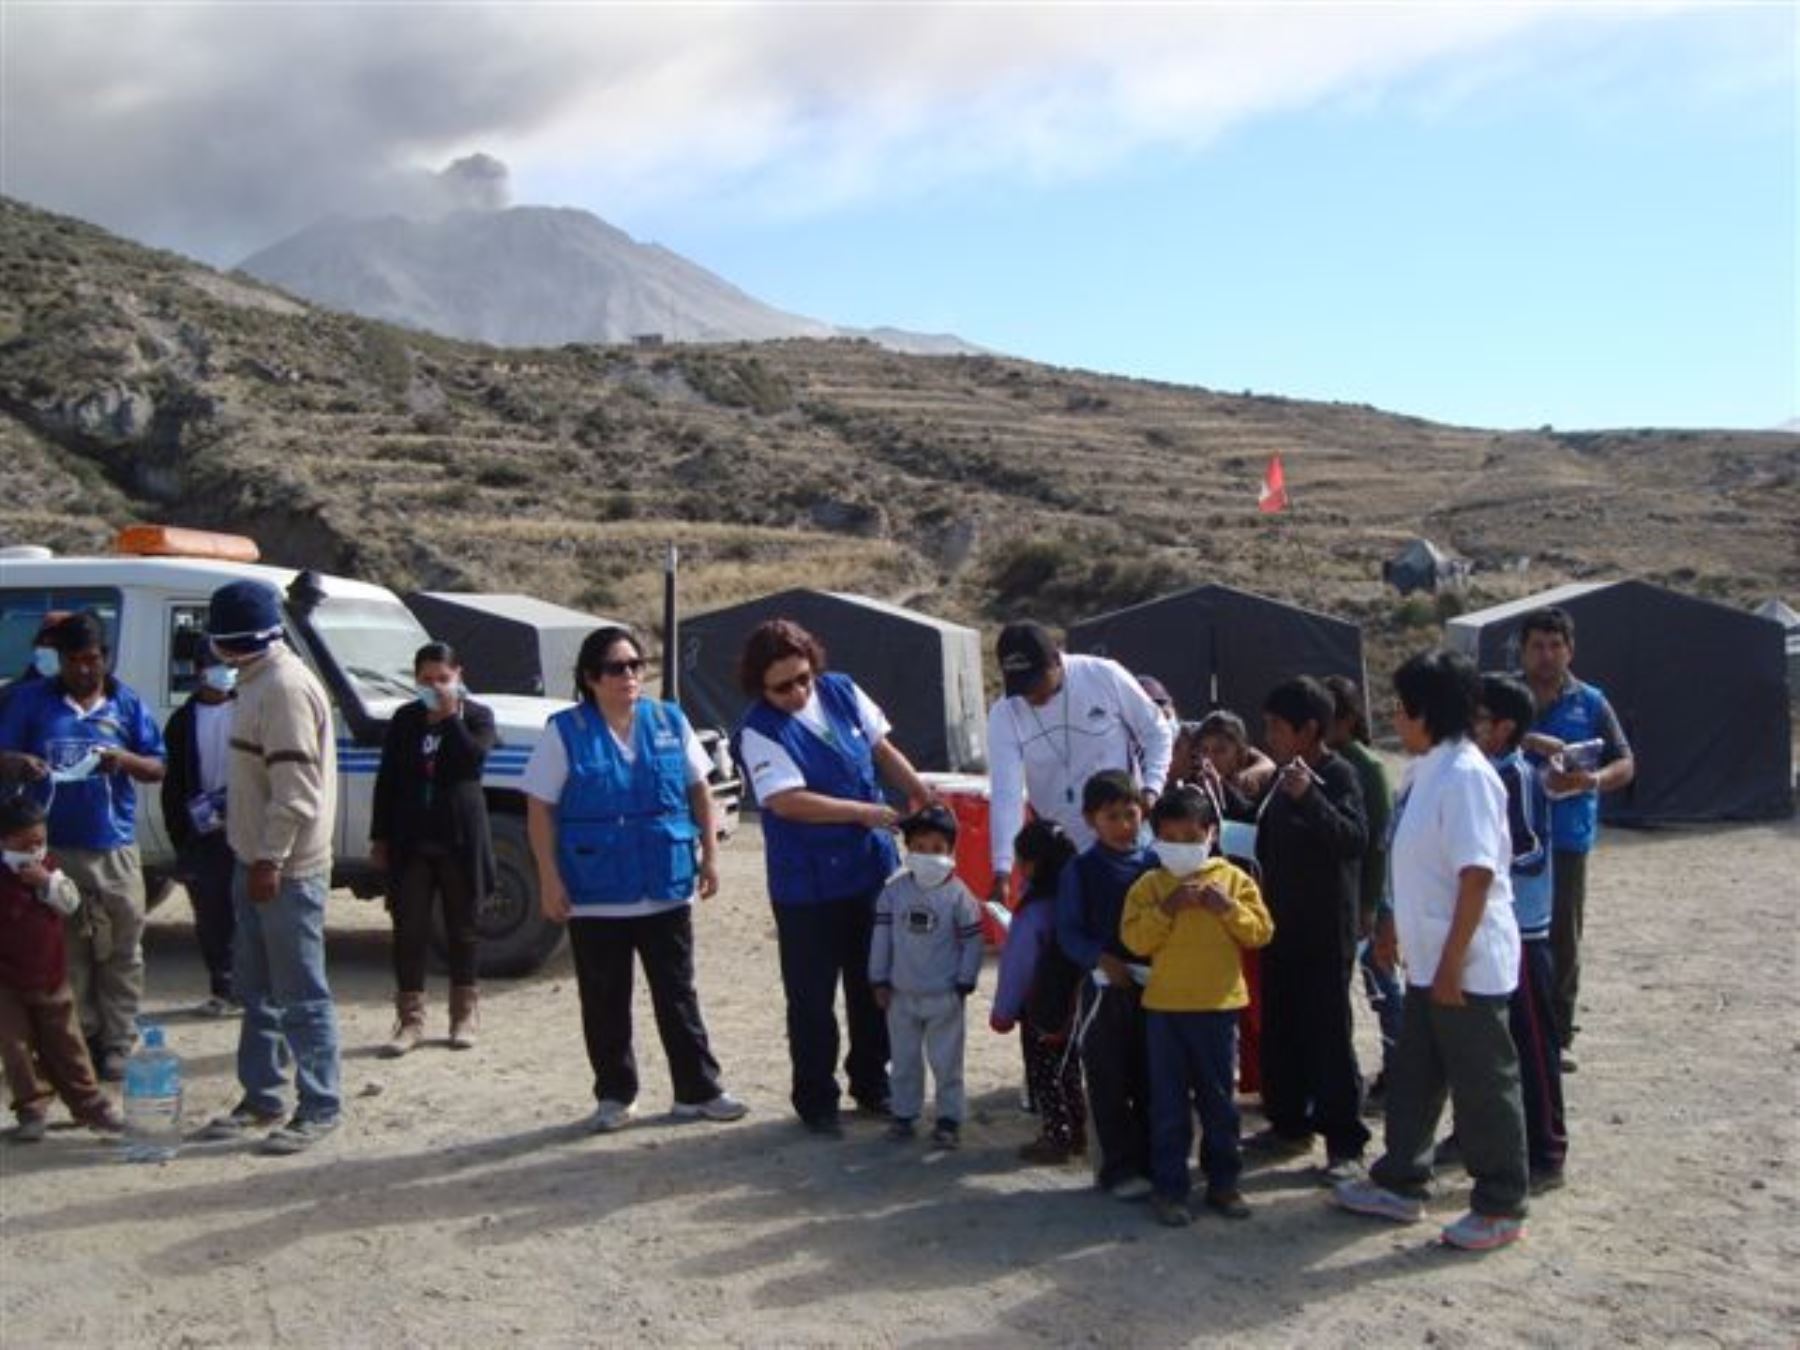 COER Arequipa distribuirá también mascarillas y lentes protectores a pobladores de distrito de San Juan de Tarucani para prevenir impacto del volcán Ubinas. ANDINA/Archivo